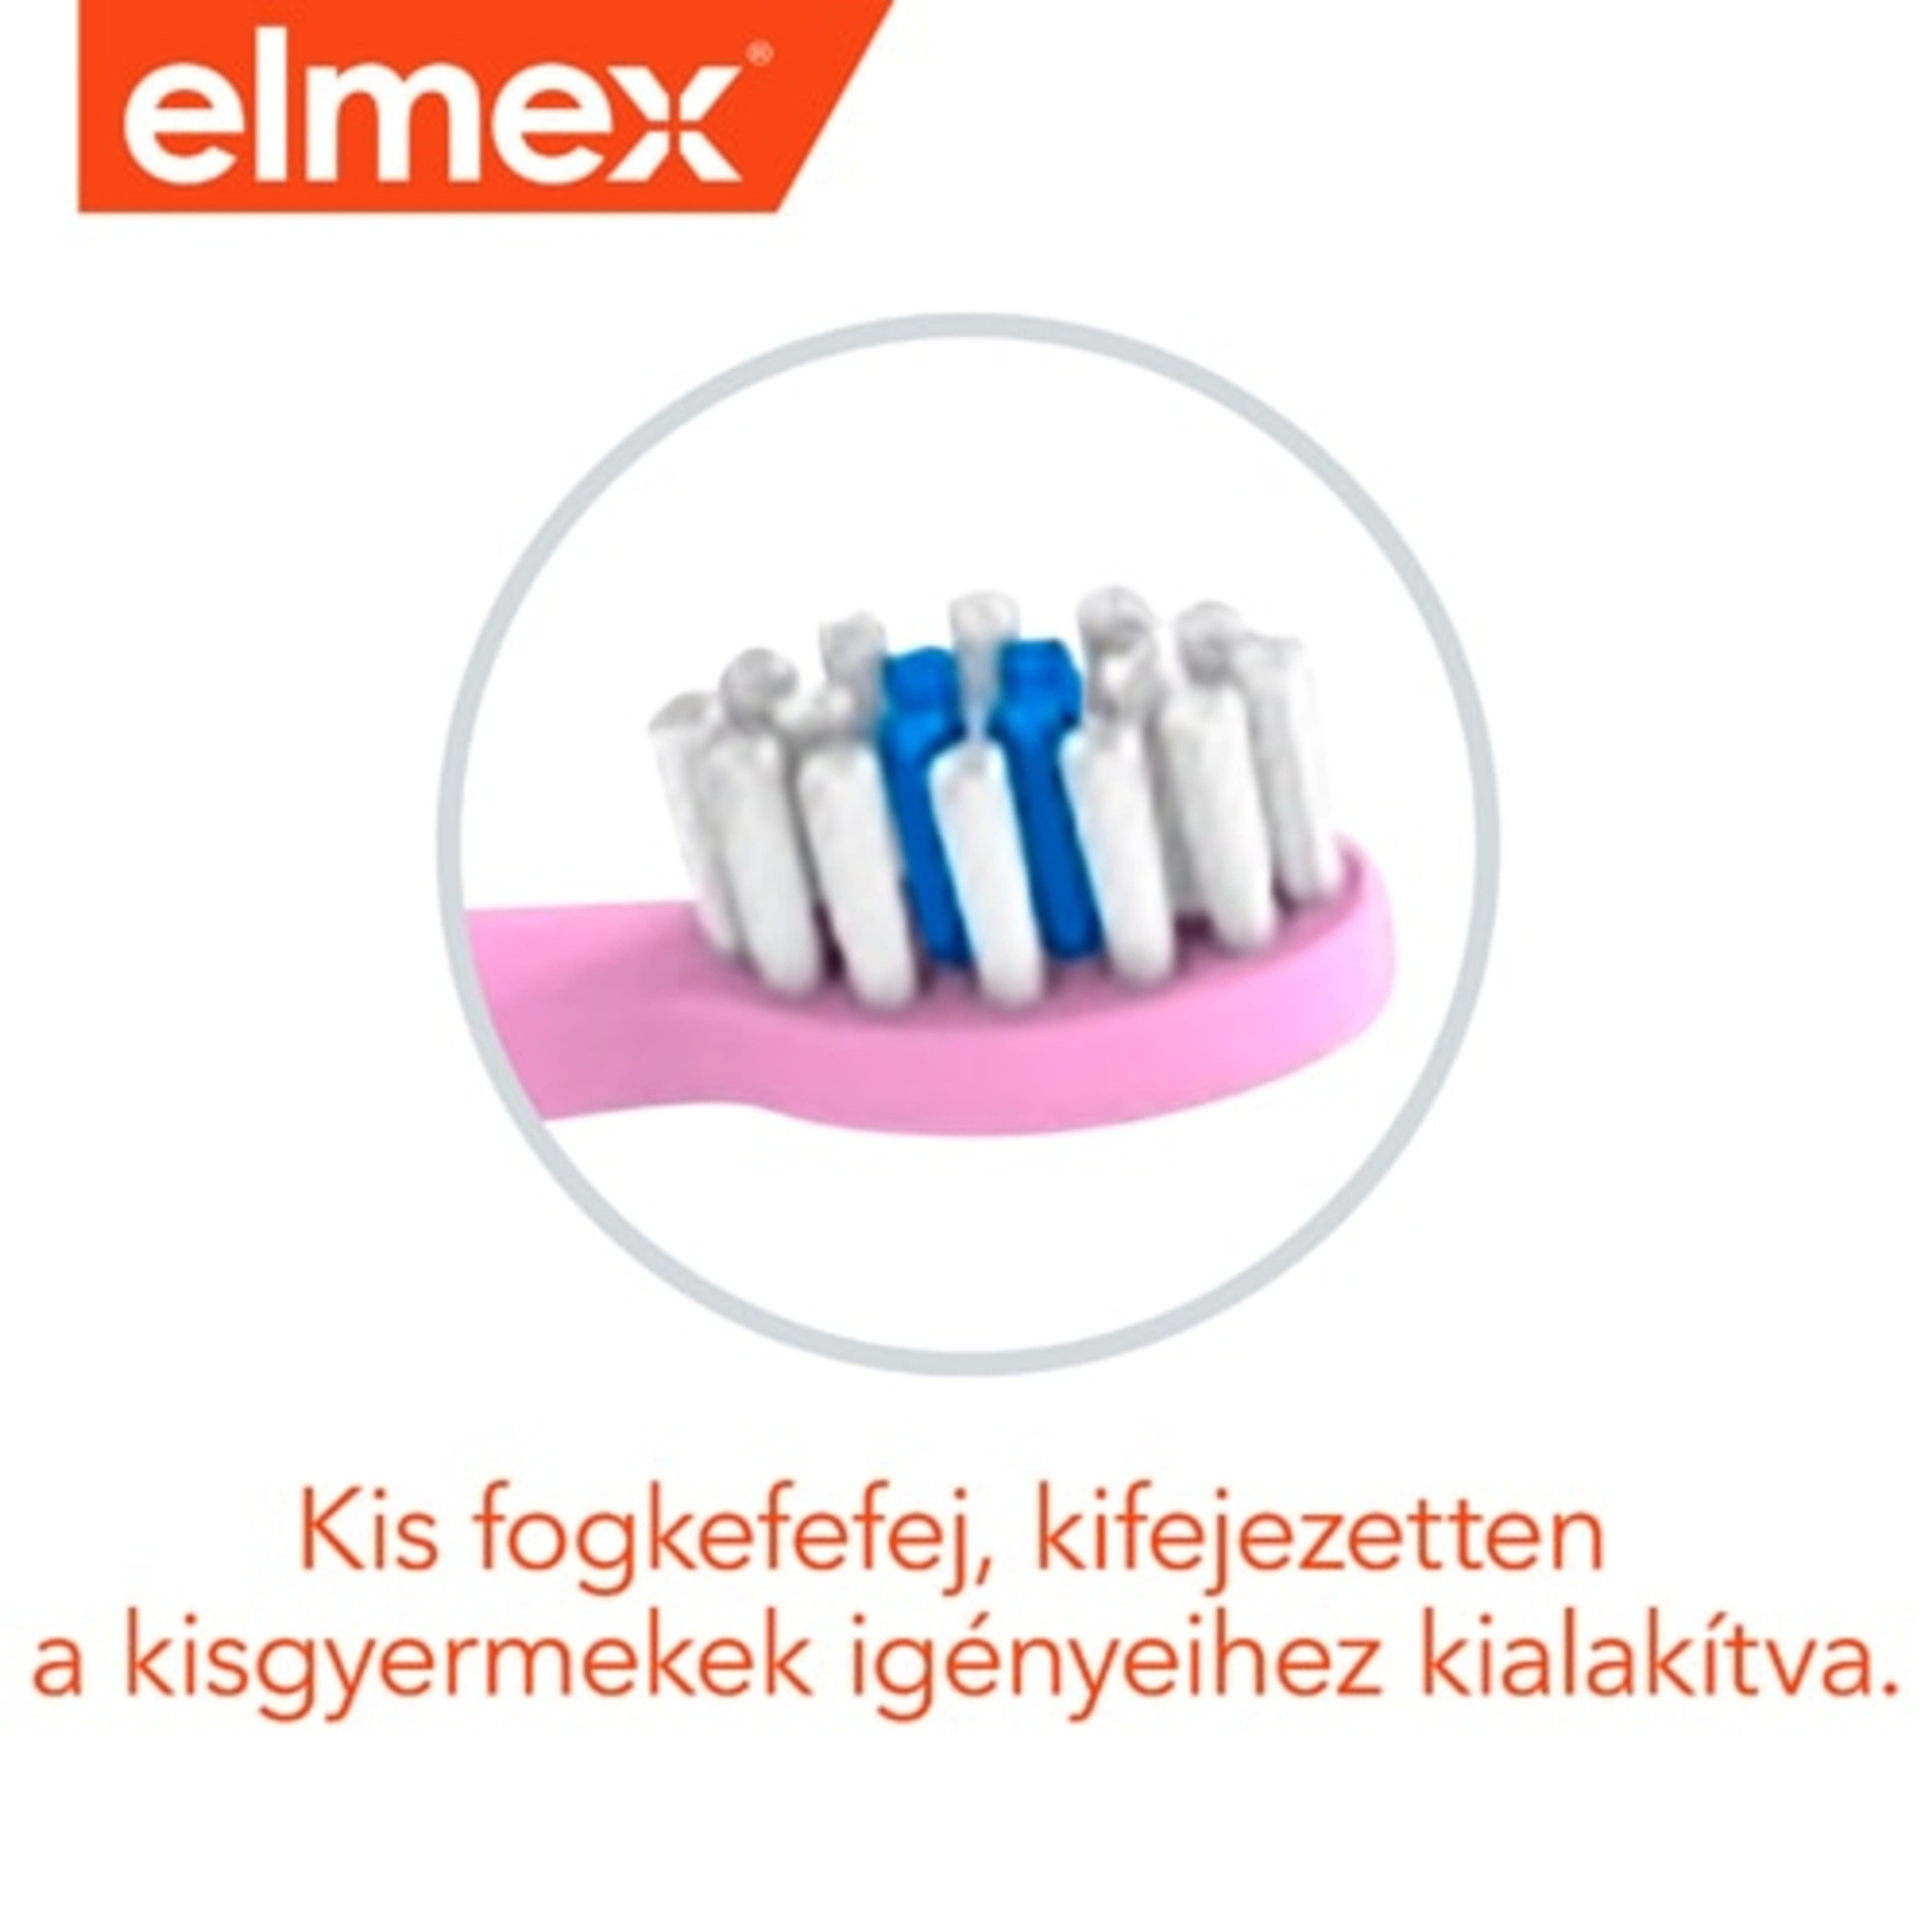 Elmex fogkefe és fogkrém 0-3 éves kor között - 1 db-5